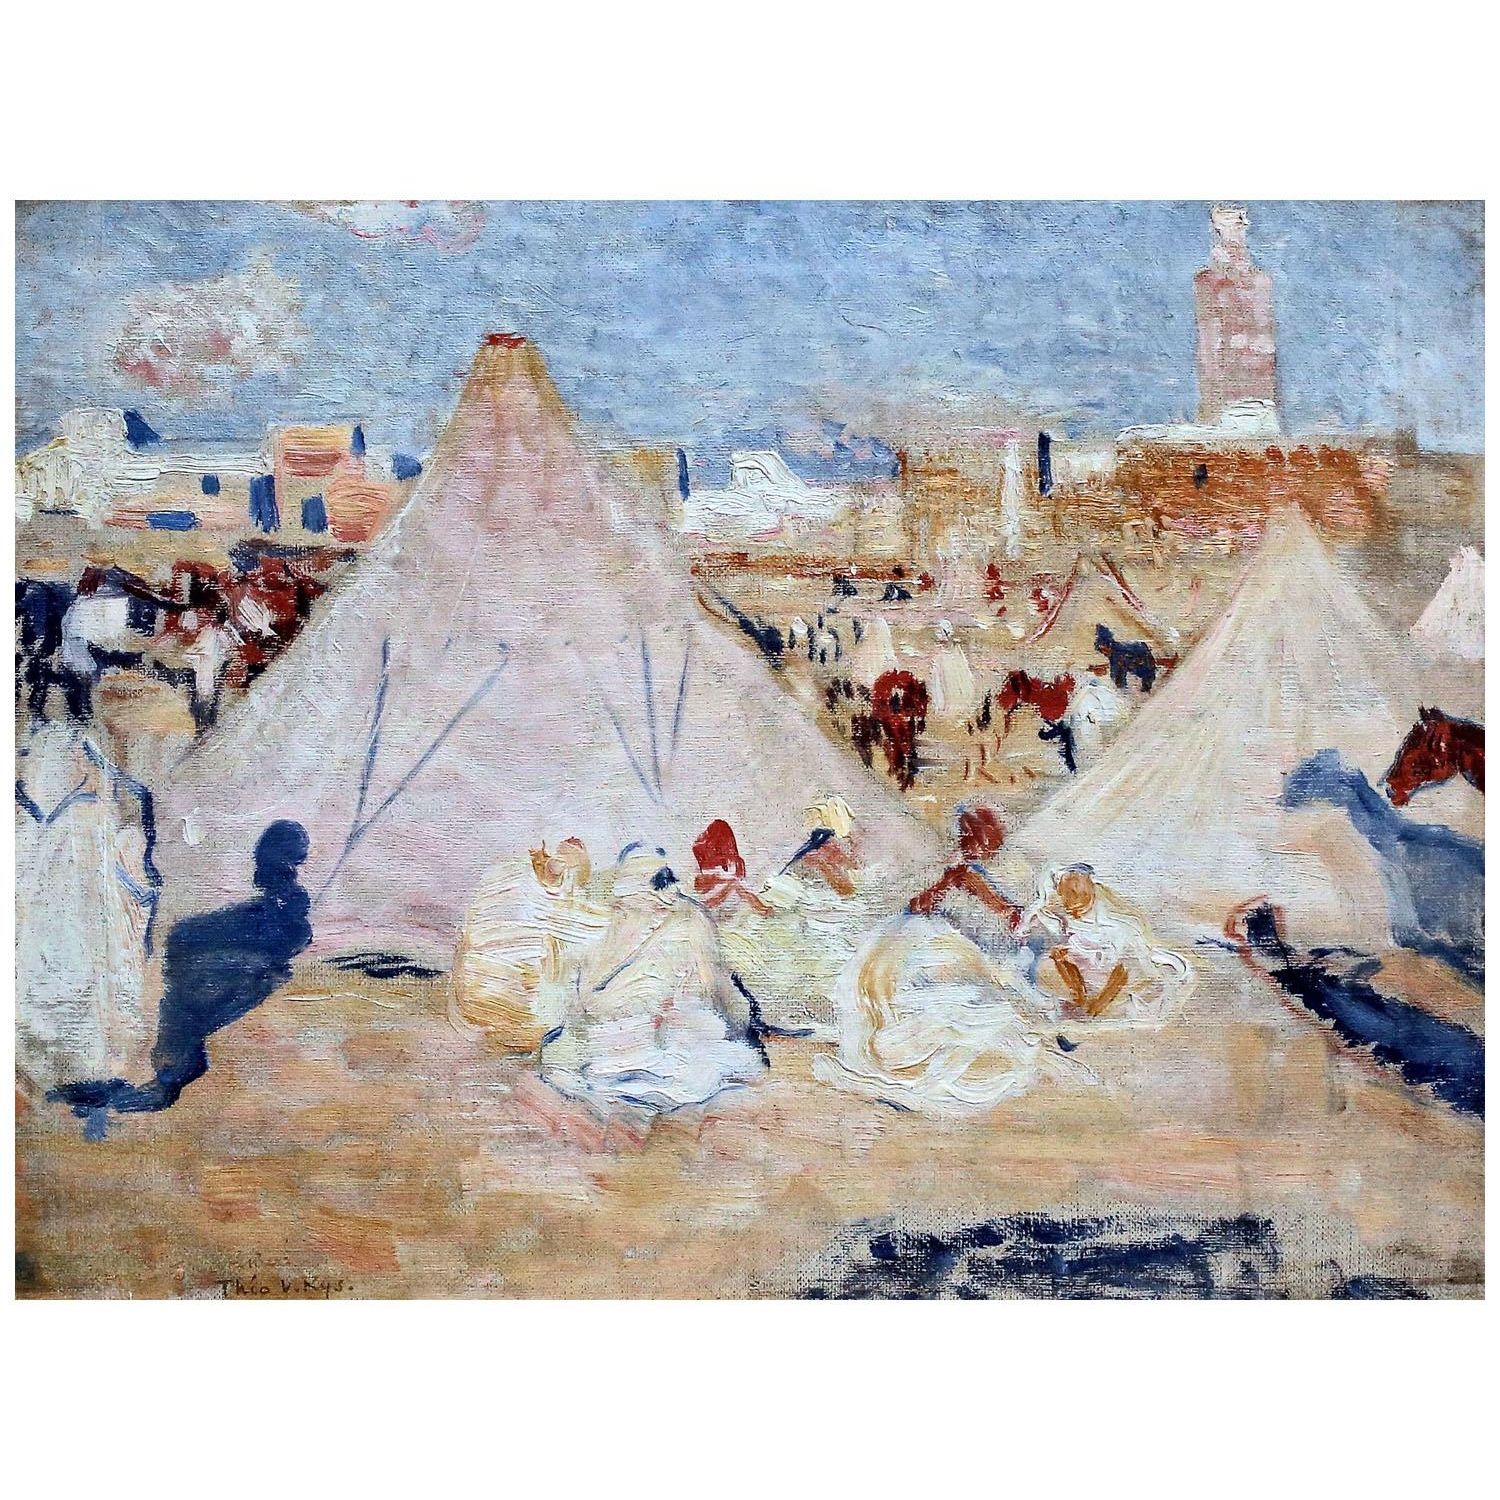 Theo van Rysselberghe. Campement au Maroc. 1887. Musee d’Ixelles Brussels